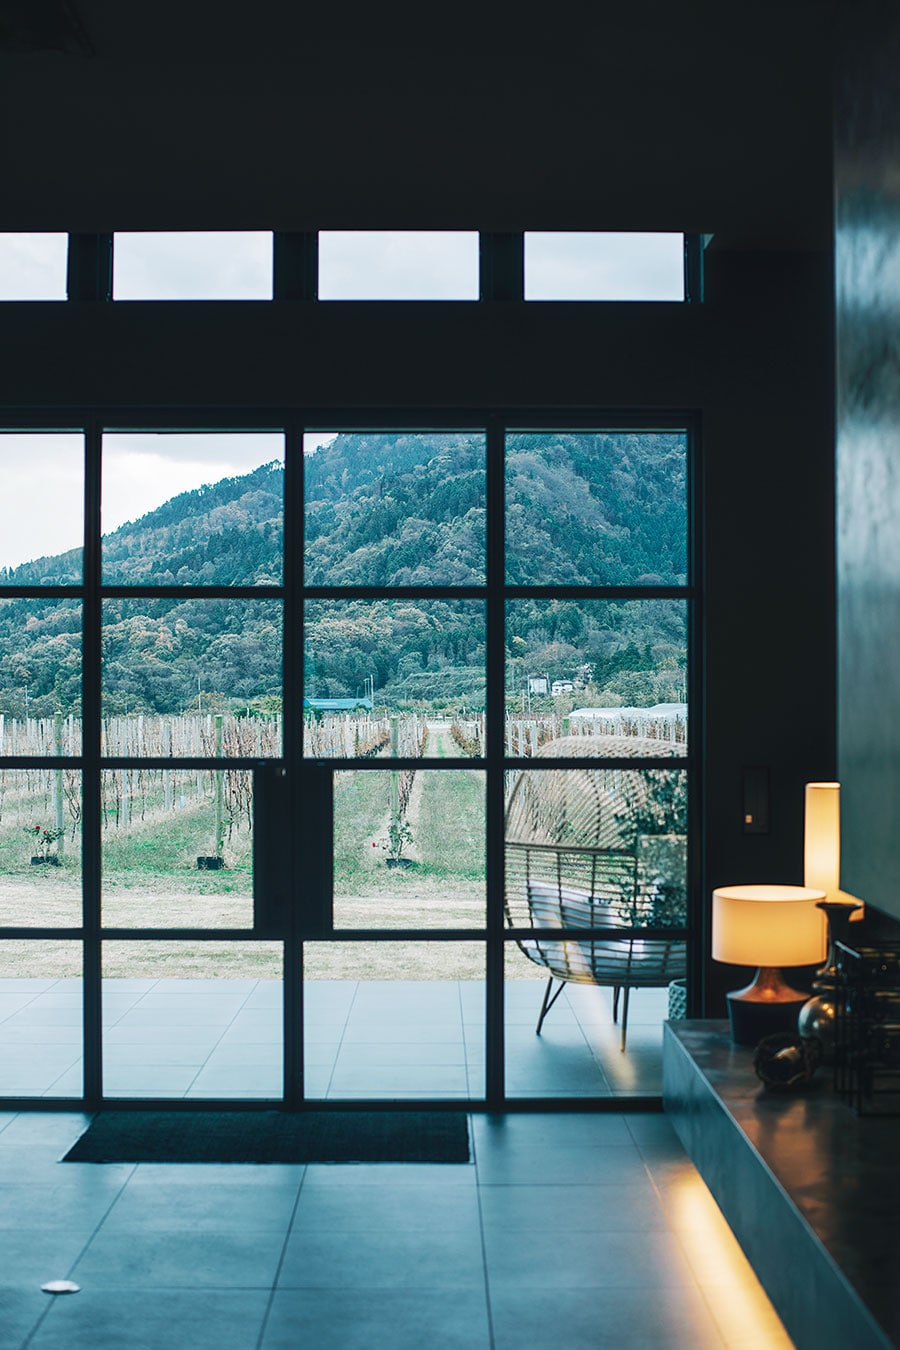 【Winerystay TRAVIGNE】600坪の葡萄畑に面したホテル。朝は畑でランニングする人も。Photo: Masahiro Shimazaki